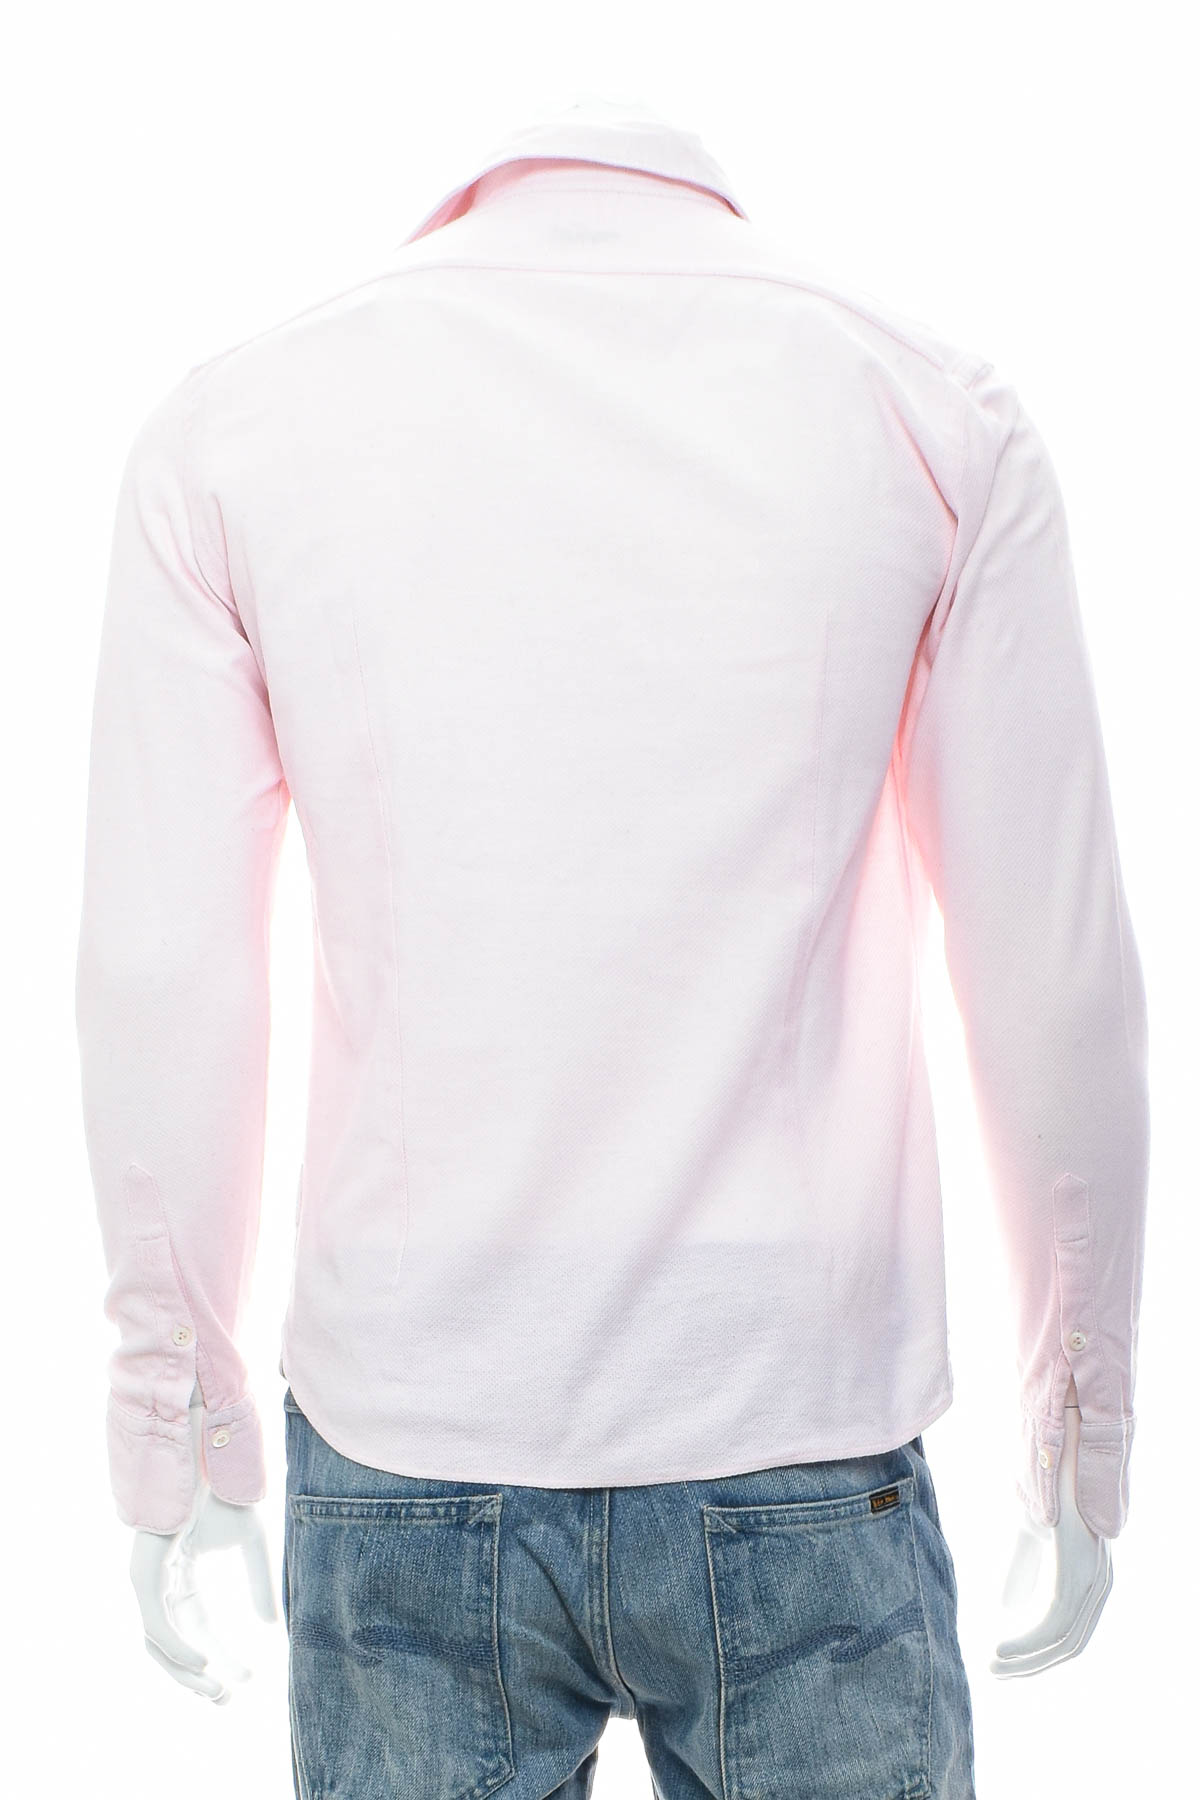 Men's shirt - Van Laack - 1